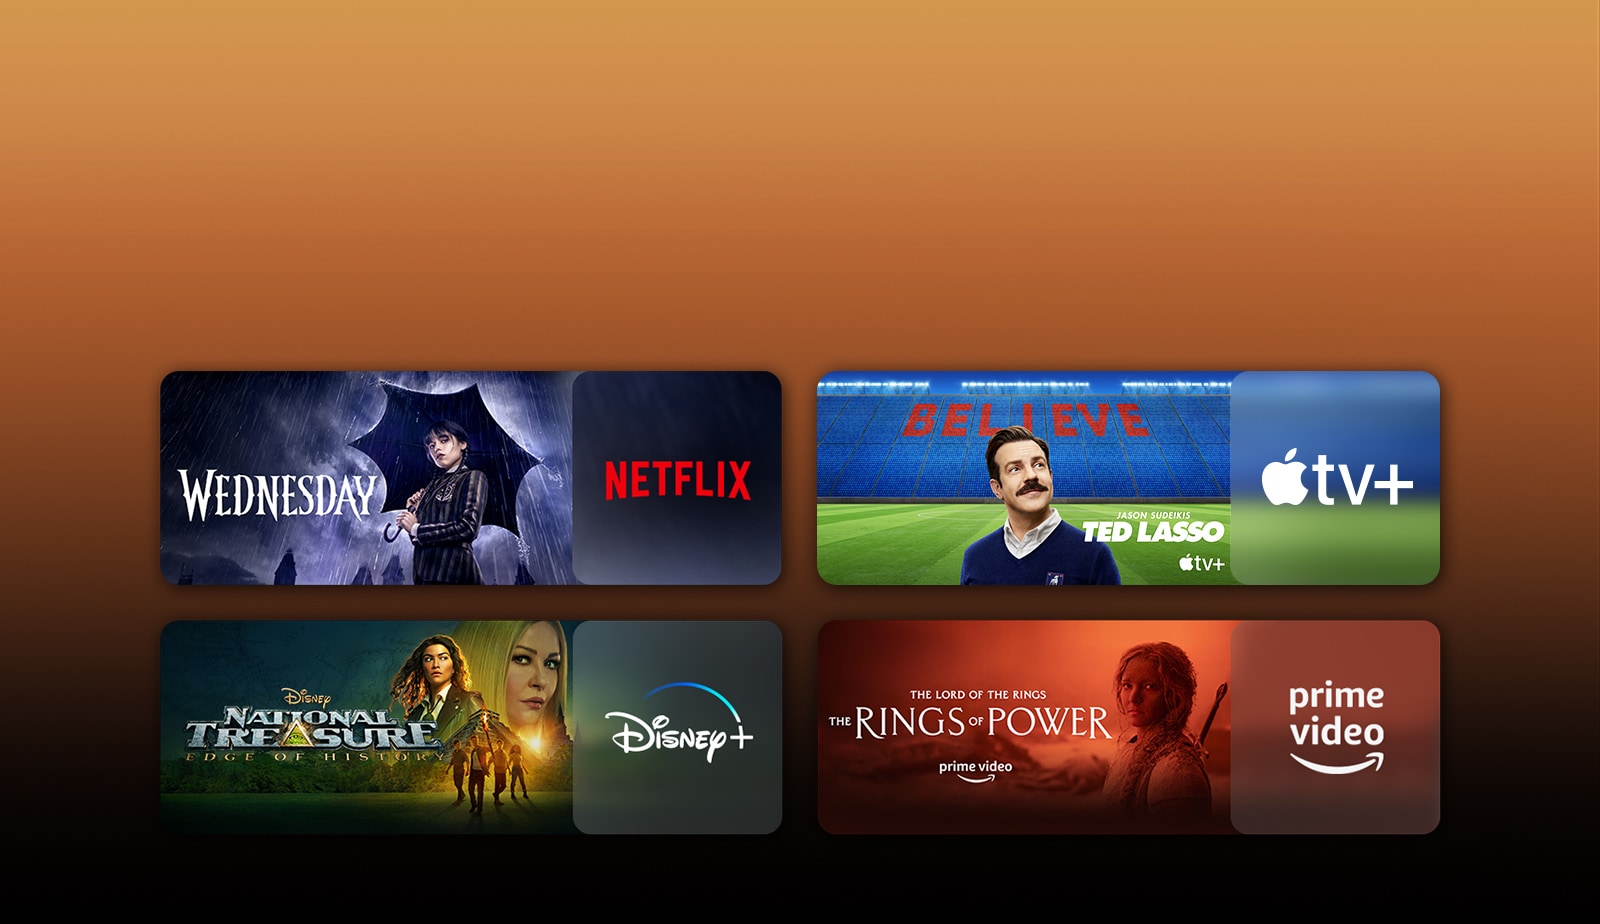 Λογότυπα των πλατφορμών υπηρεσιών streaming και αντίστοιχο υλικό ακριβώς δίπλα σε κάθε λογότυπο. Εμφανίζονται εικόνες των σειρών Wednesday του Netflix, TED LASSO του Apple TV, National Treasure του Disney Plus, The rings of power του PRIME VIDEO.